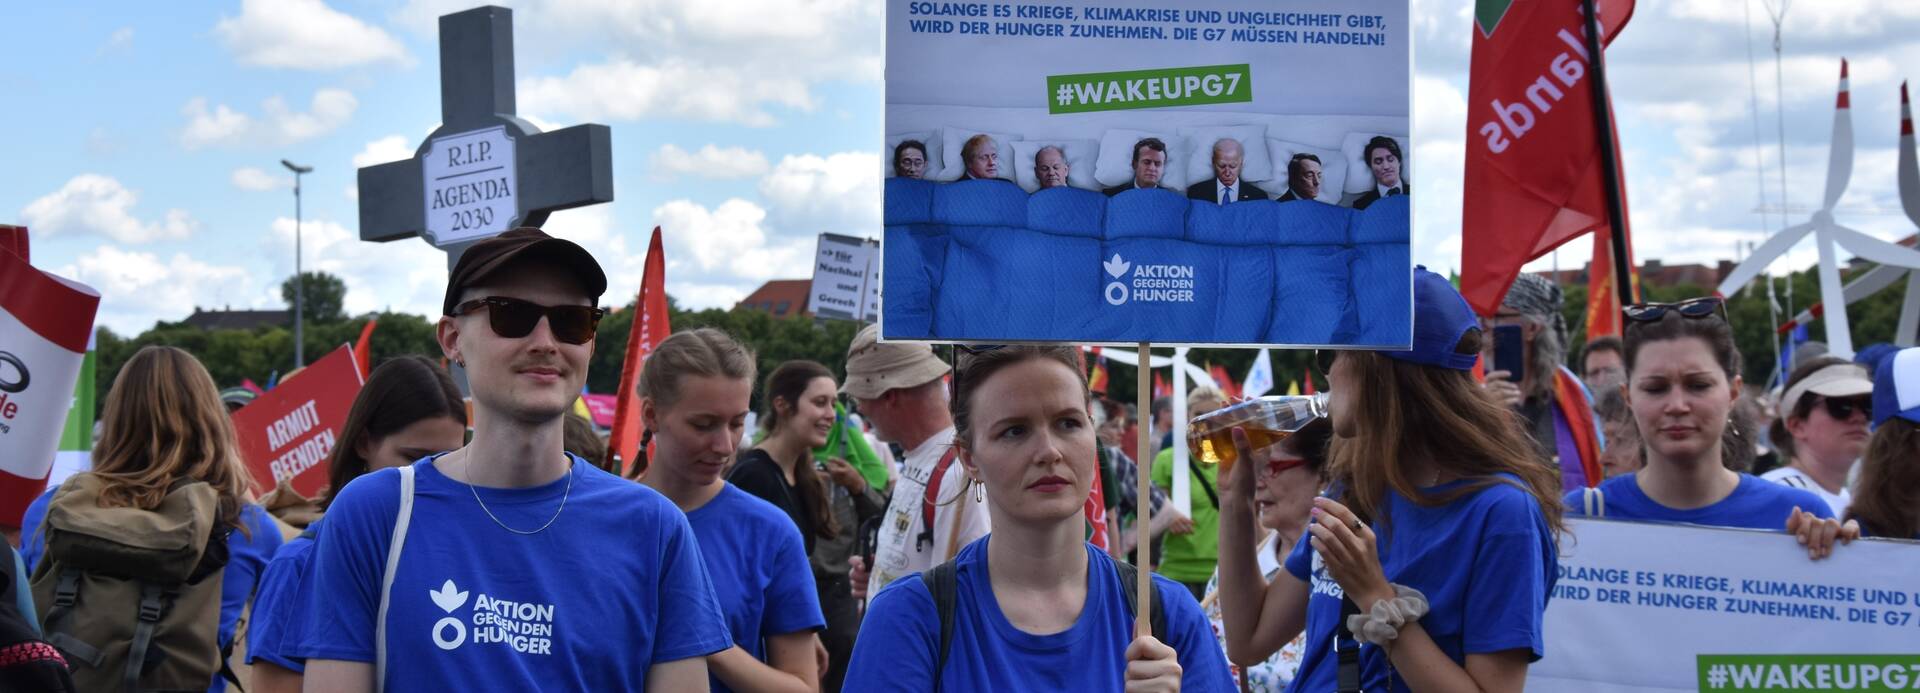 Mitarbeiter*innen von Aktion gegen den Hunger bei der G7-Demo in München am 25. Juni 2022